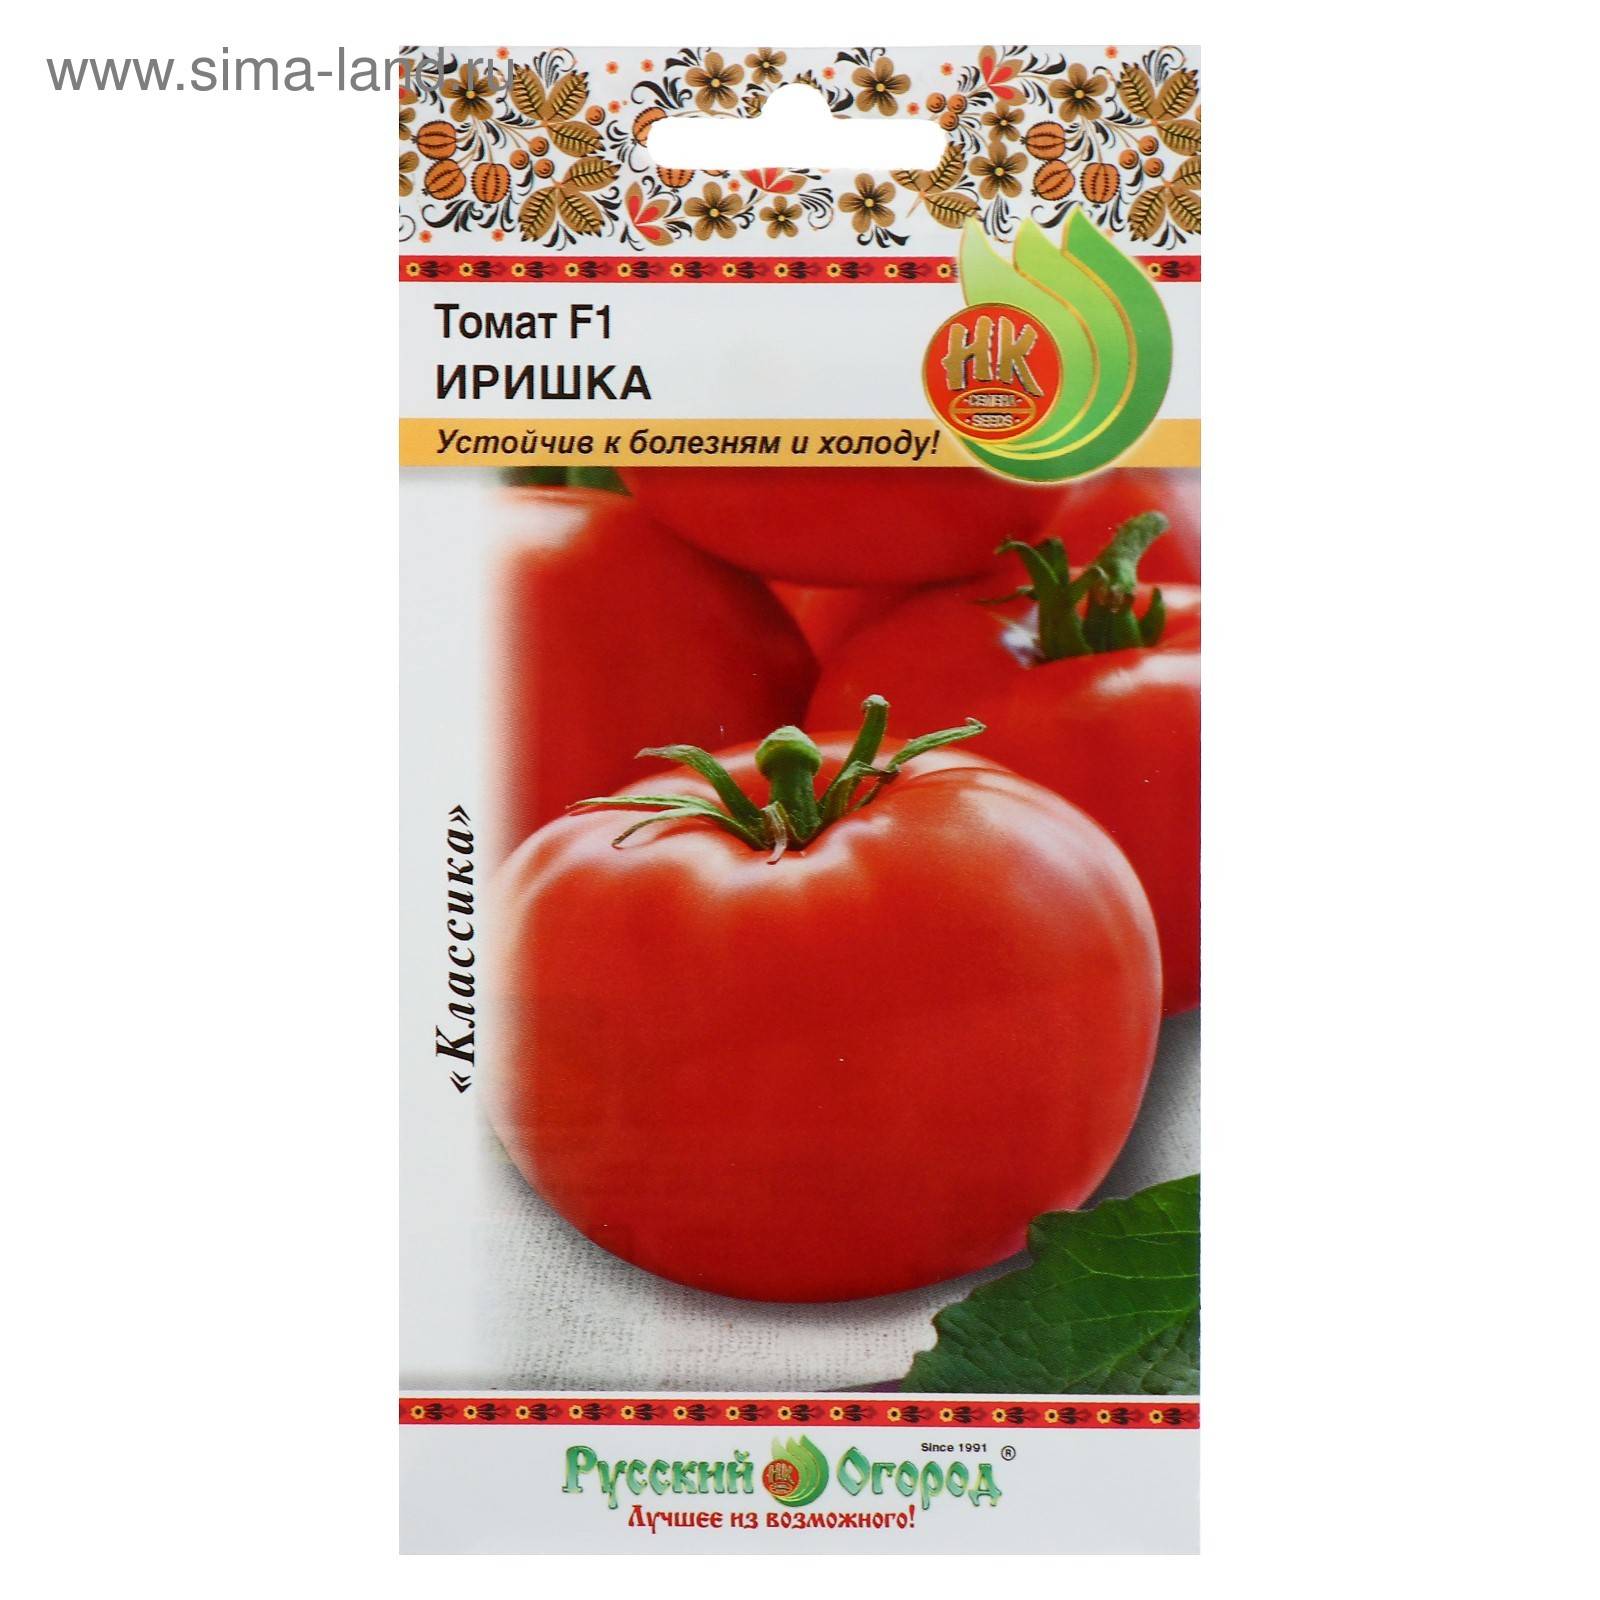 Описание высокоурожайного гибридного томата Иришка F1 и характеристика плодов